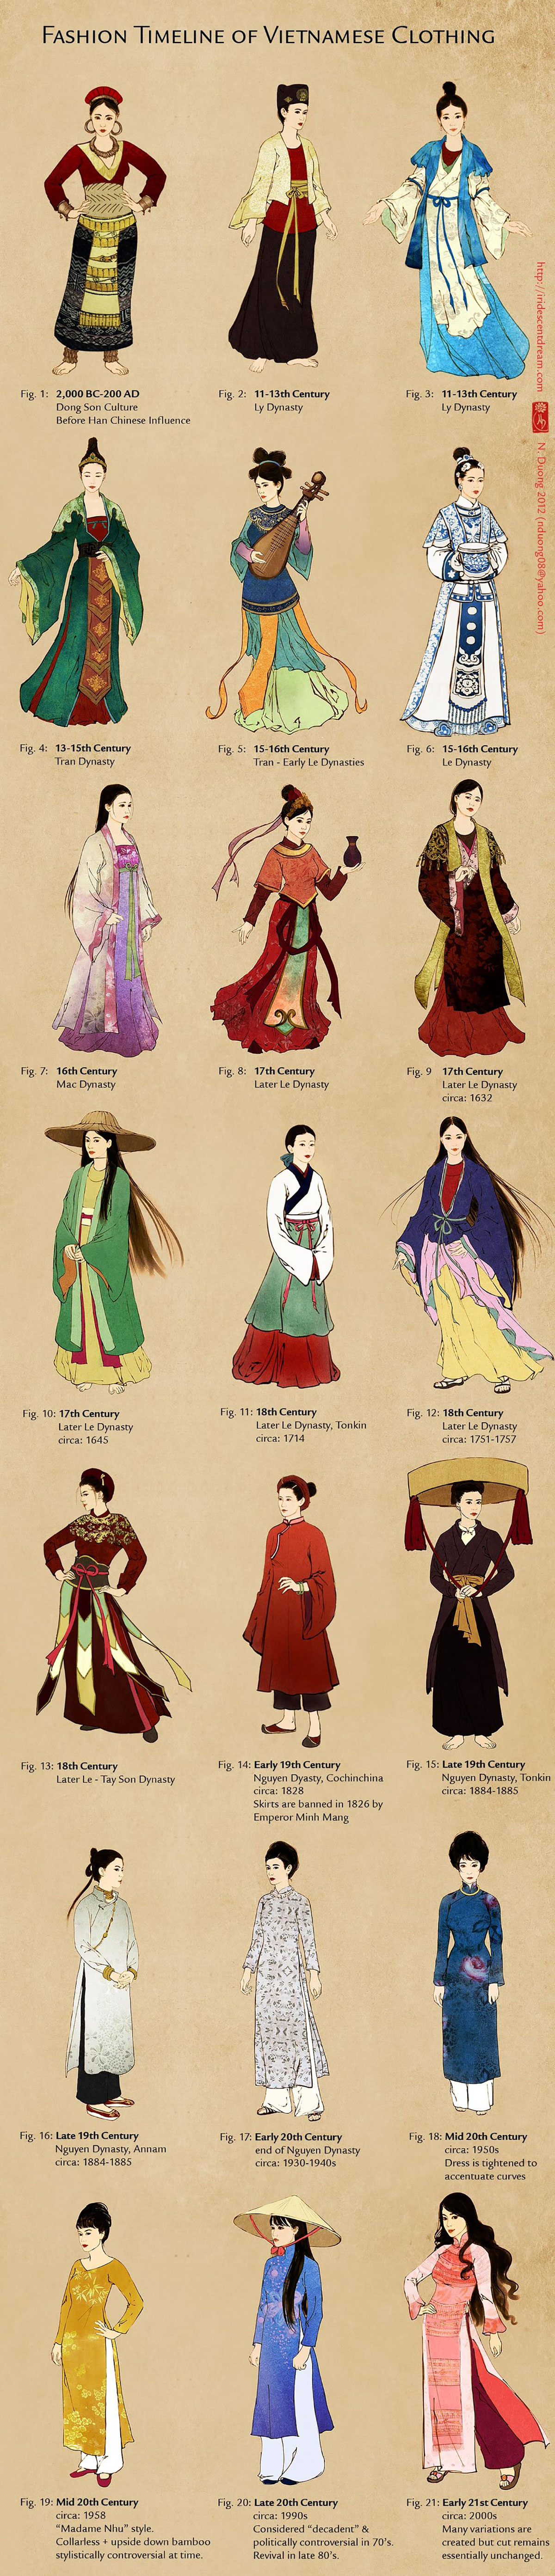 Infographie sur la mode vestimentaire au Vietnam par Nancy Duong